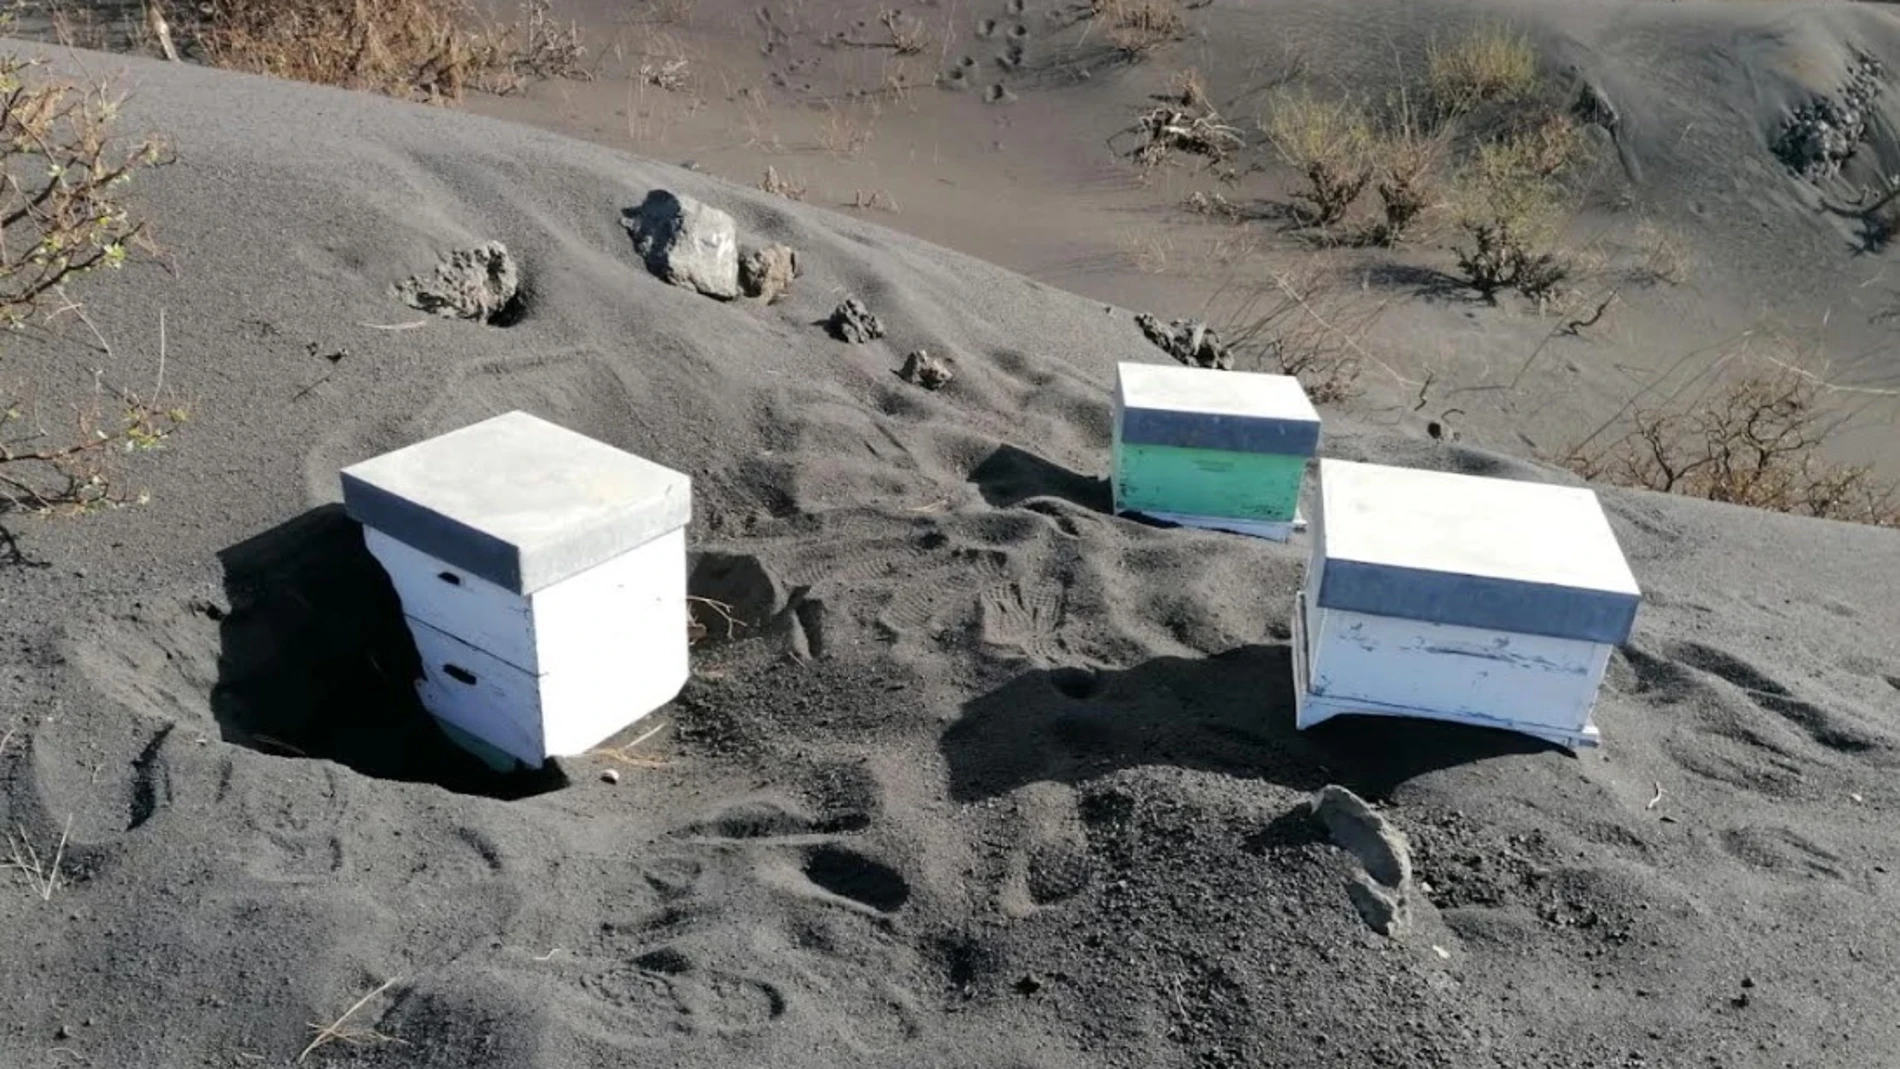 Miles de abejas sobreviven sepultadas bajo ceniza cerca del volcán de La Palma gracias a una capa de propóleo